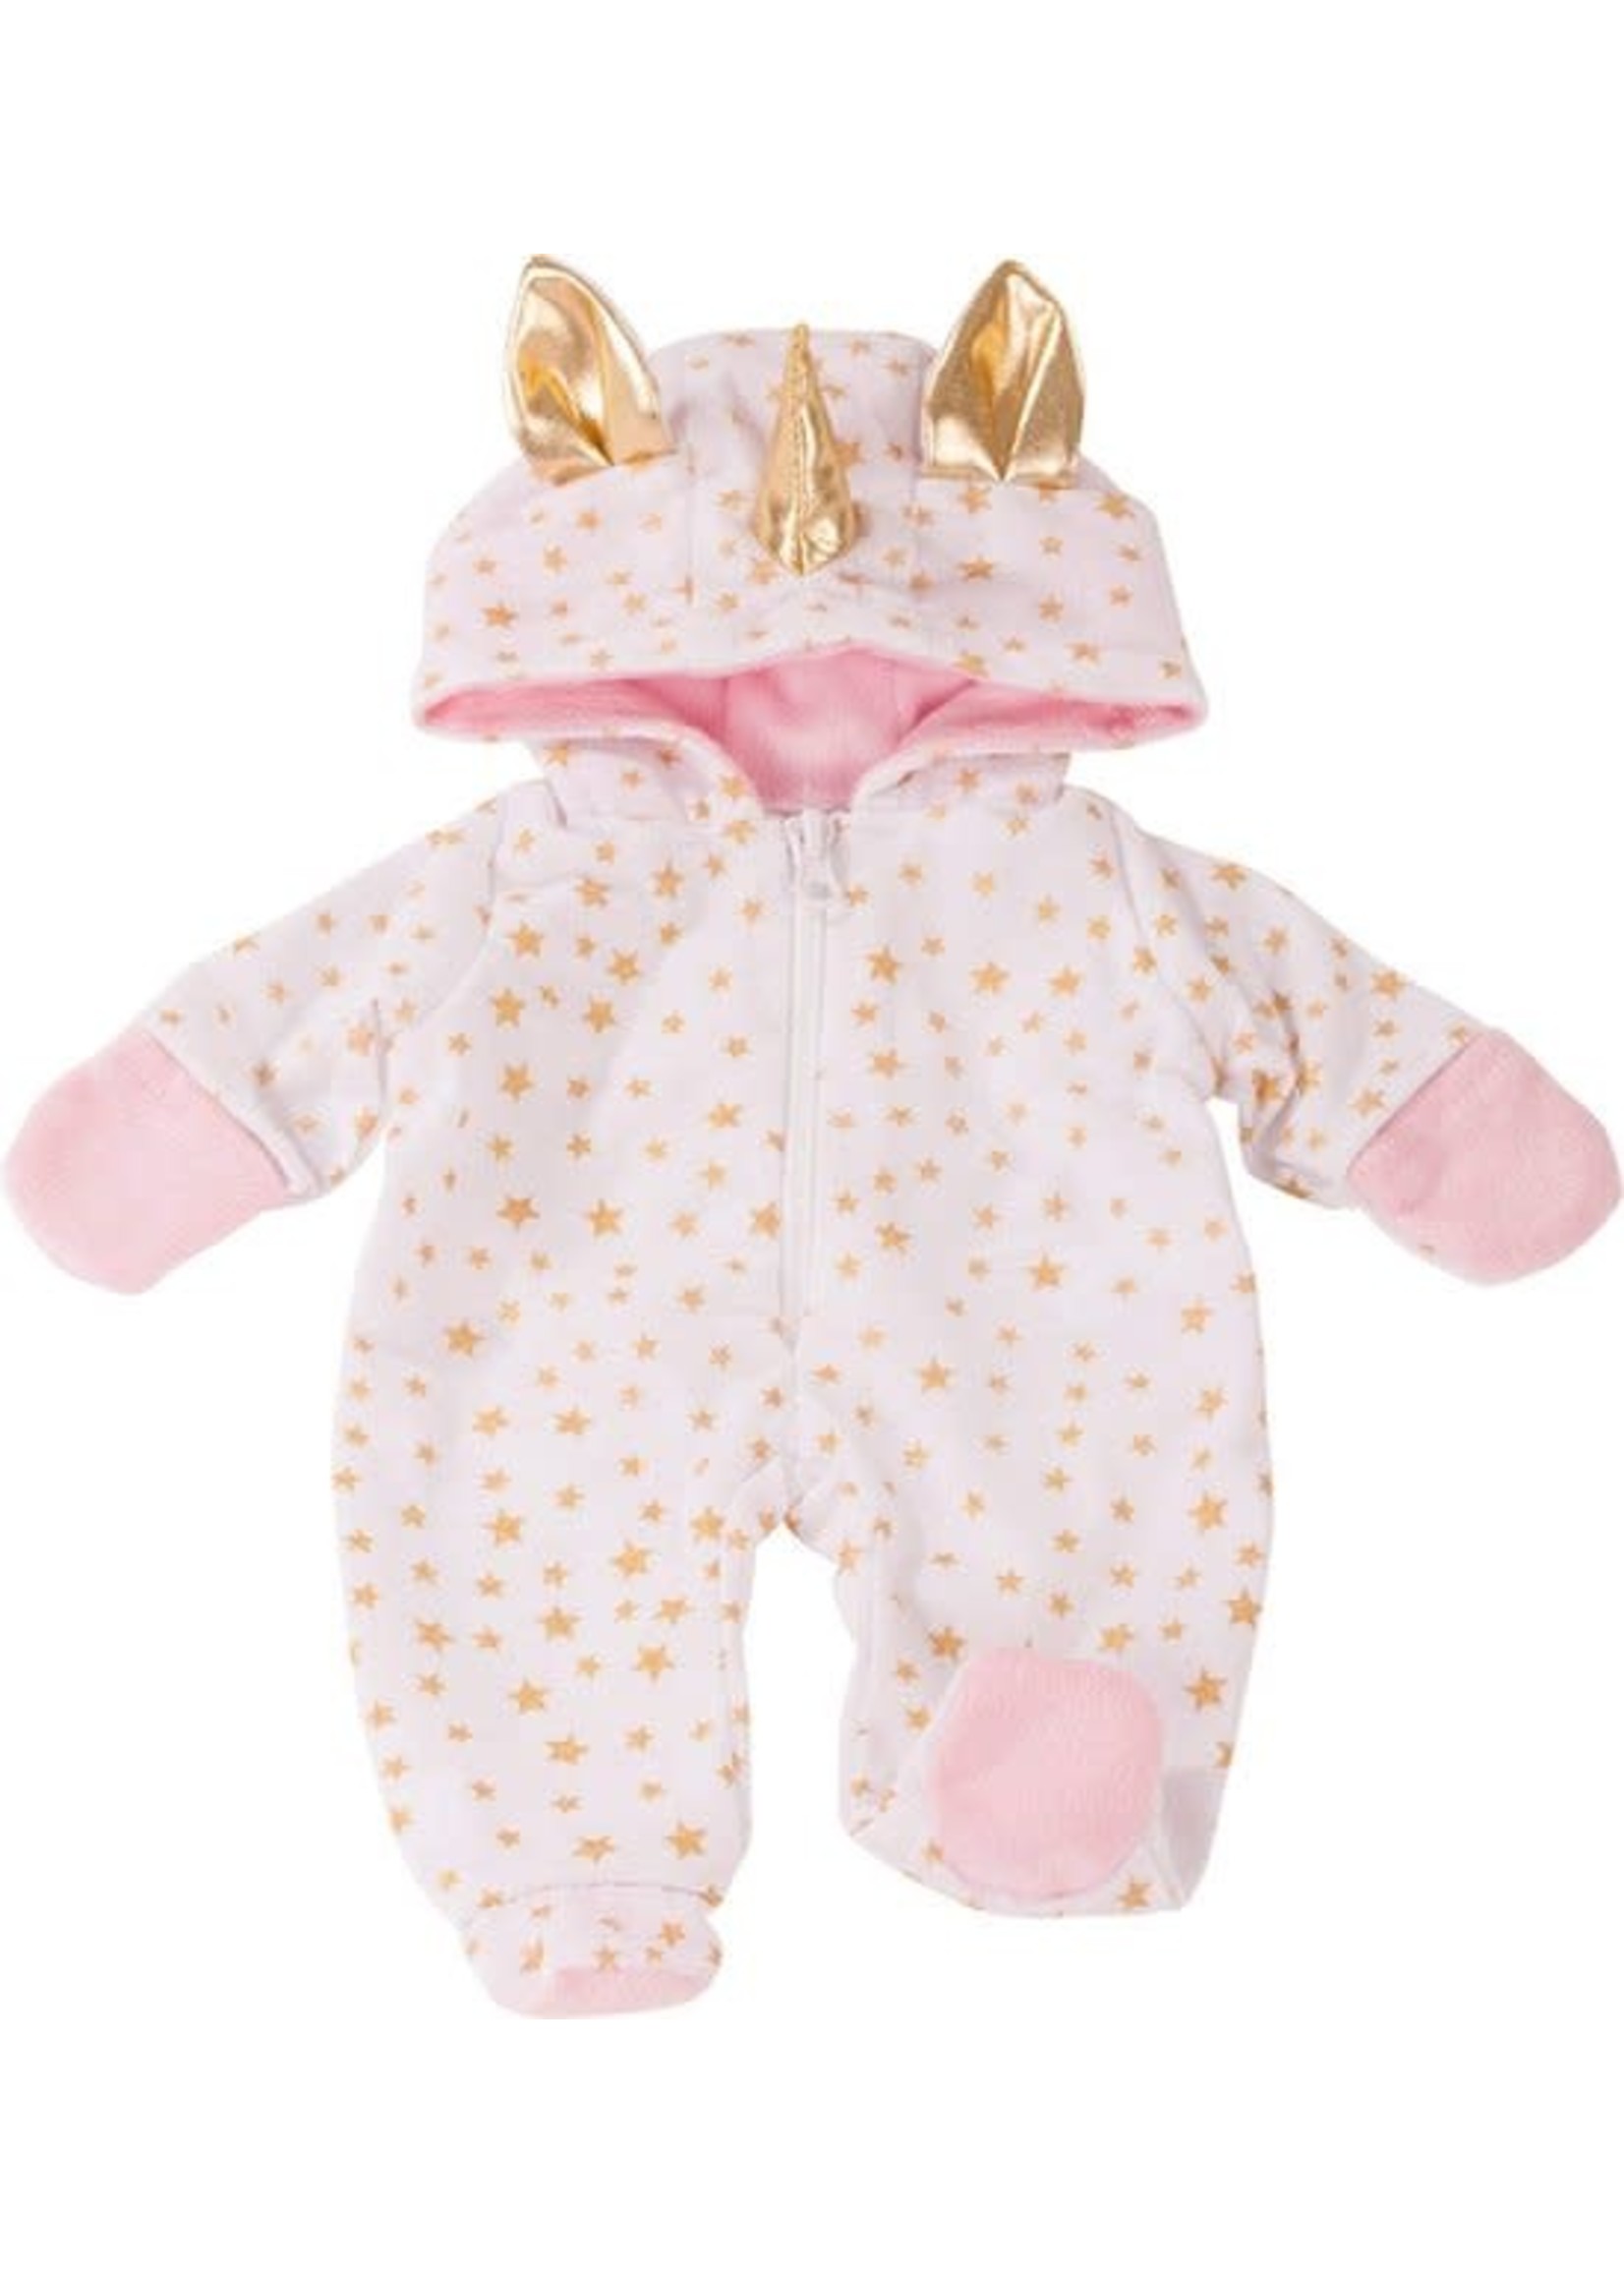 Gotz Götz poppenkleding onesie ""Unicorn"", babypoppen 42-46 cm